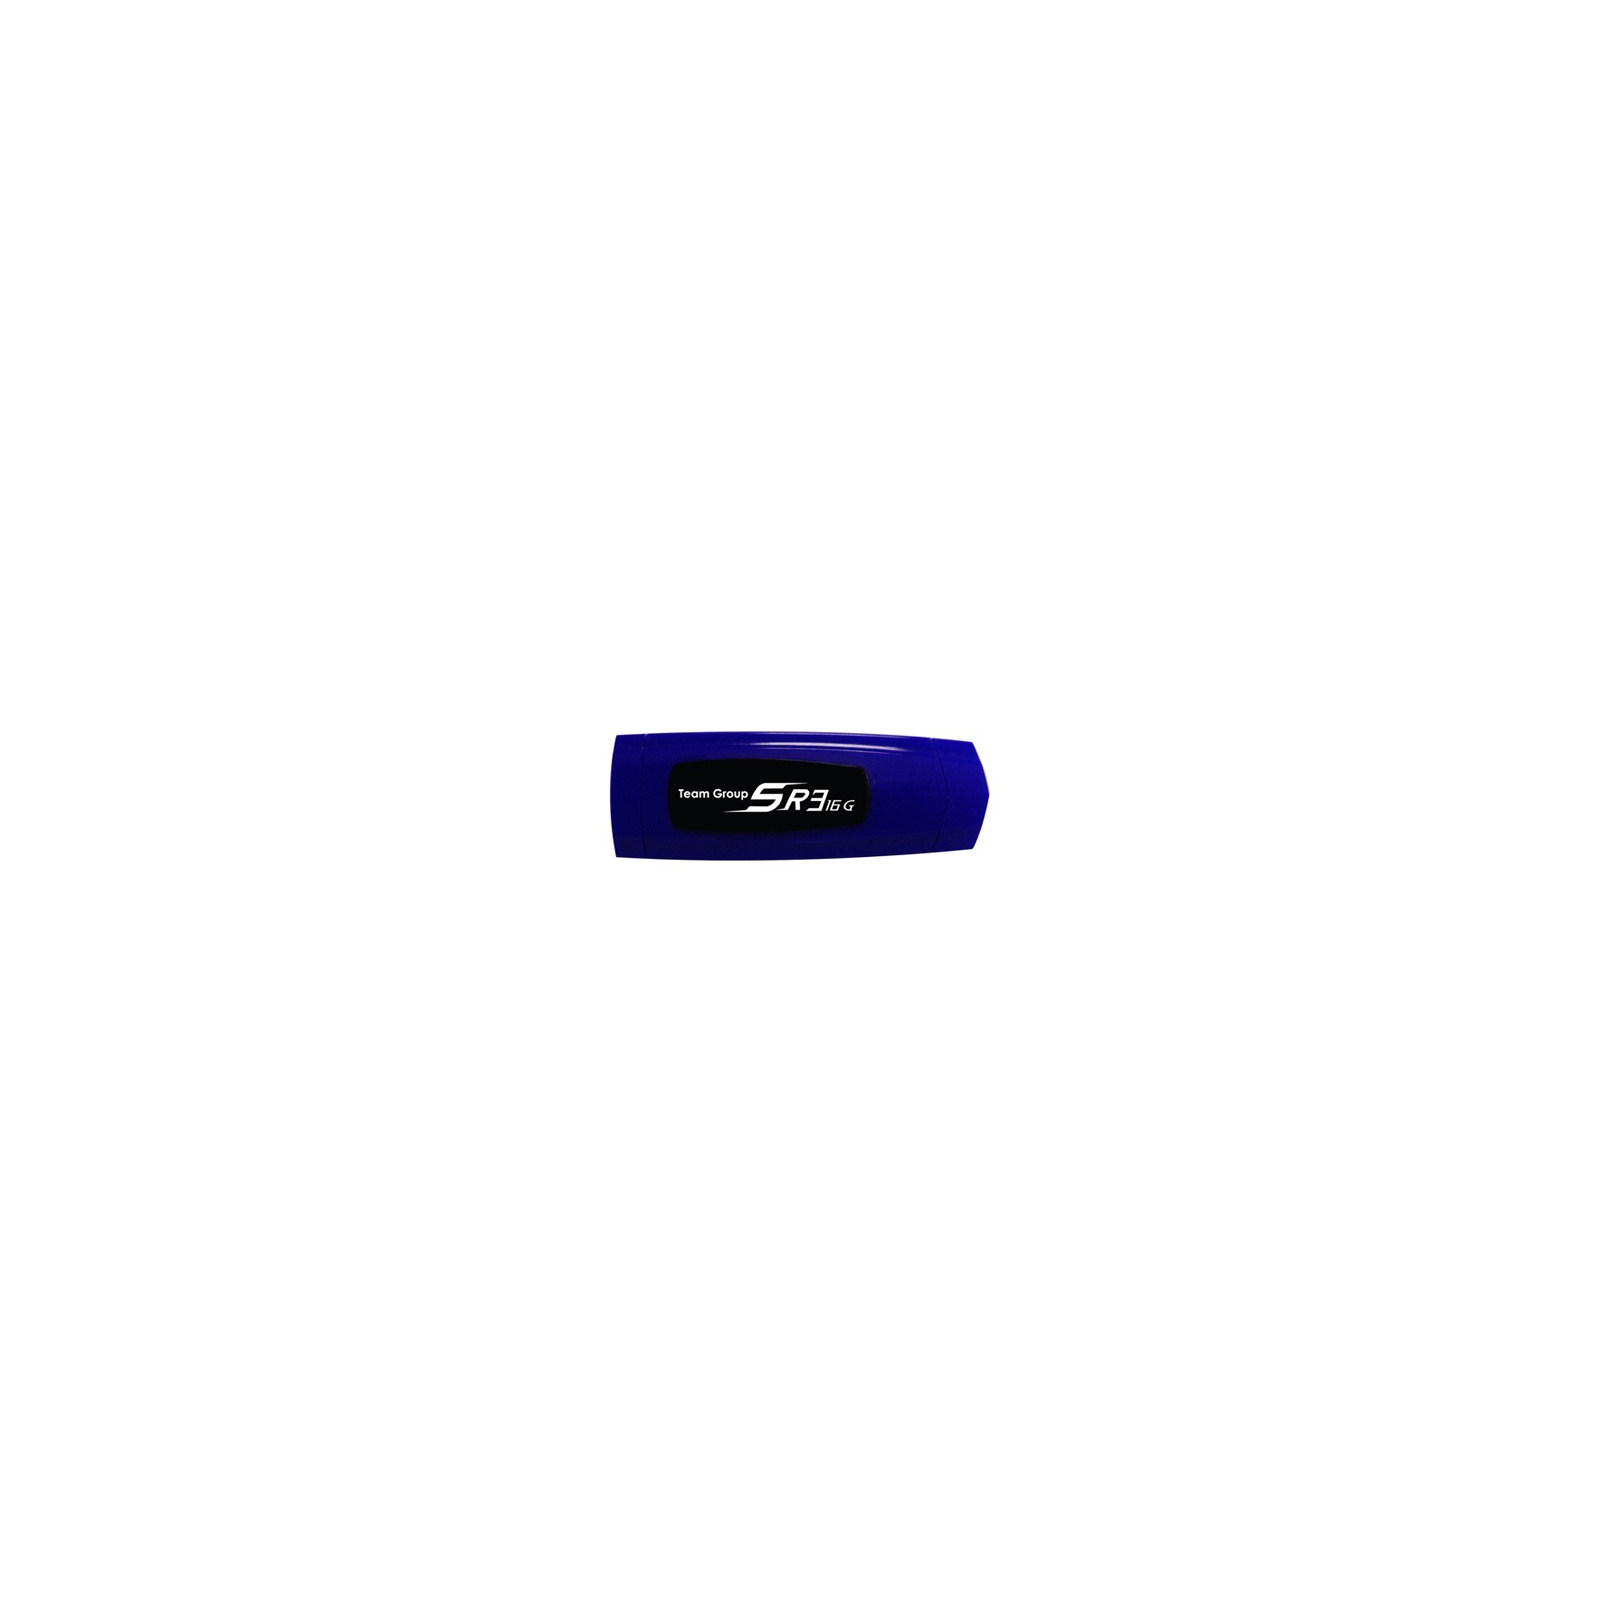 USB флеш накопитель Team 16Gb SR3 blue (TSR316GL01 / TG016GSR3XLX)